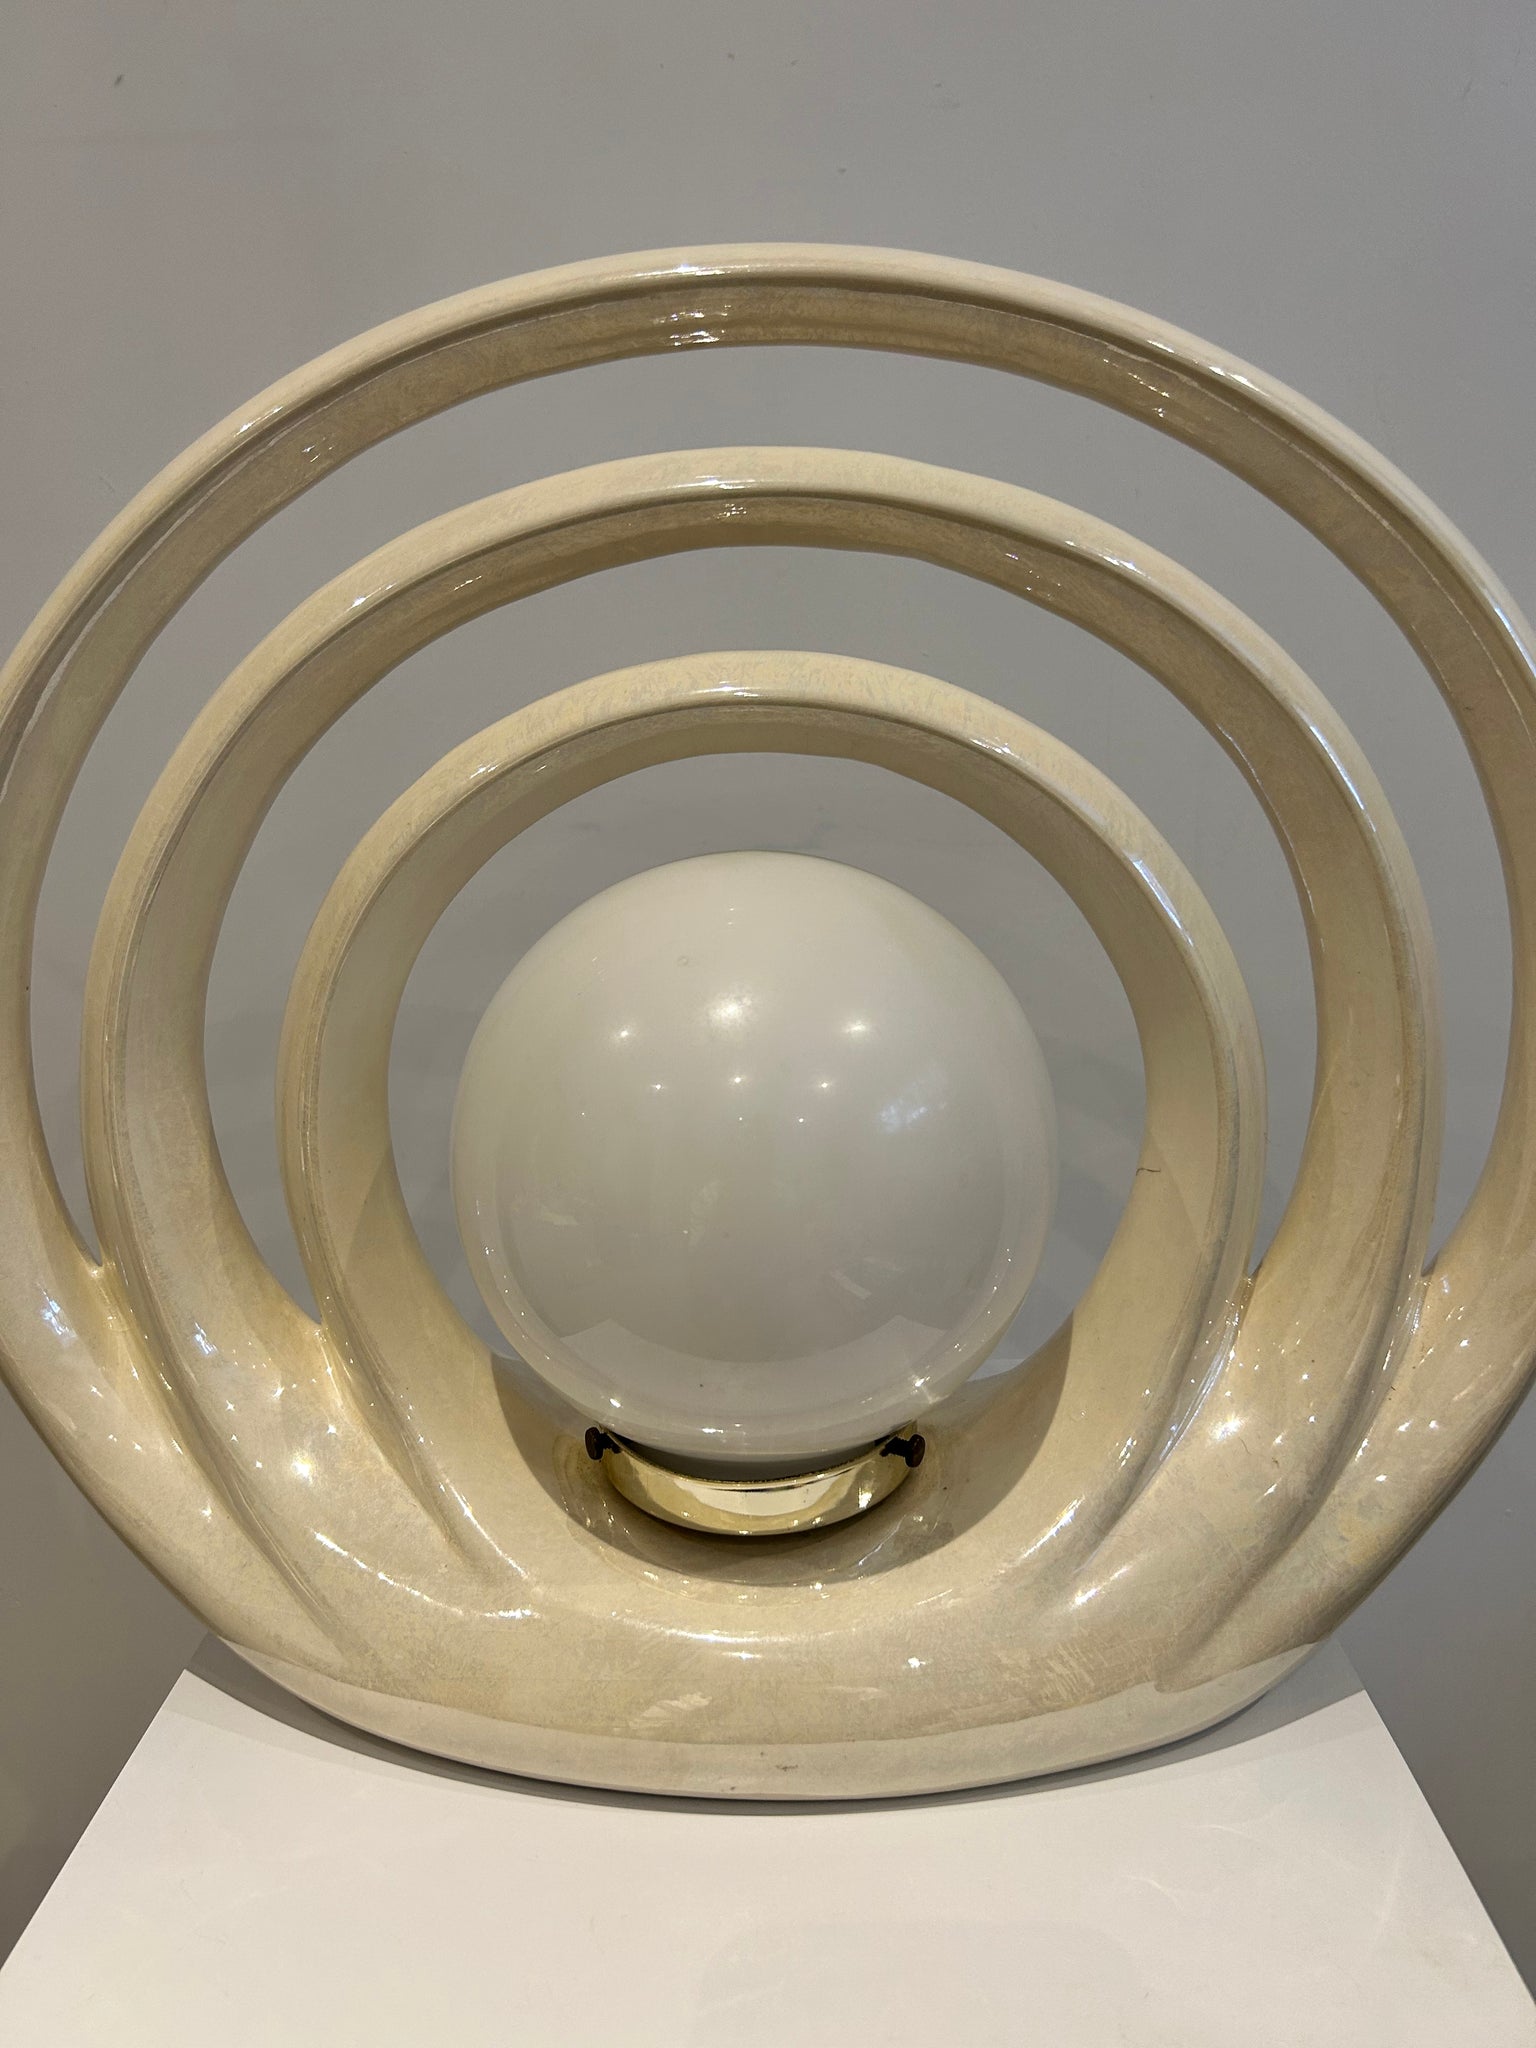 Cream iridescent ceramic art deco hoops lamps